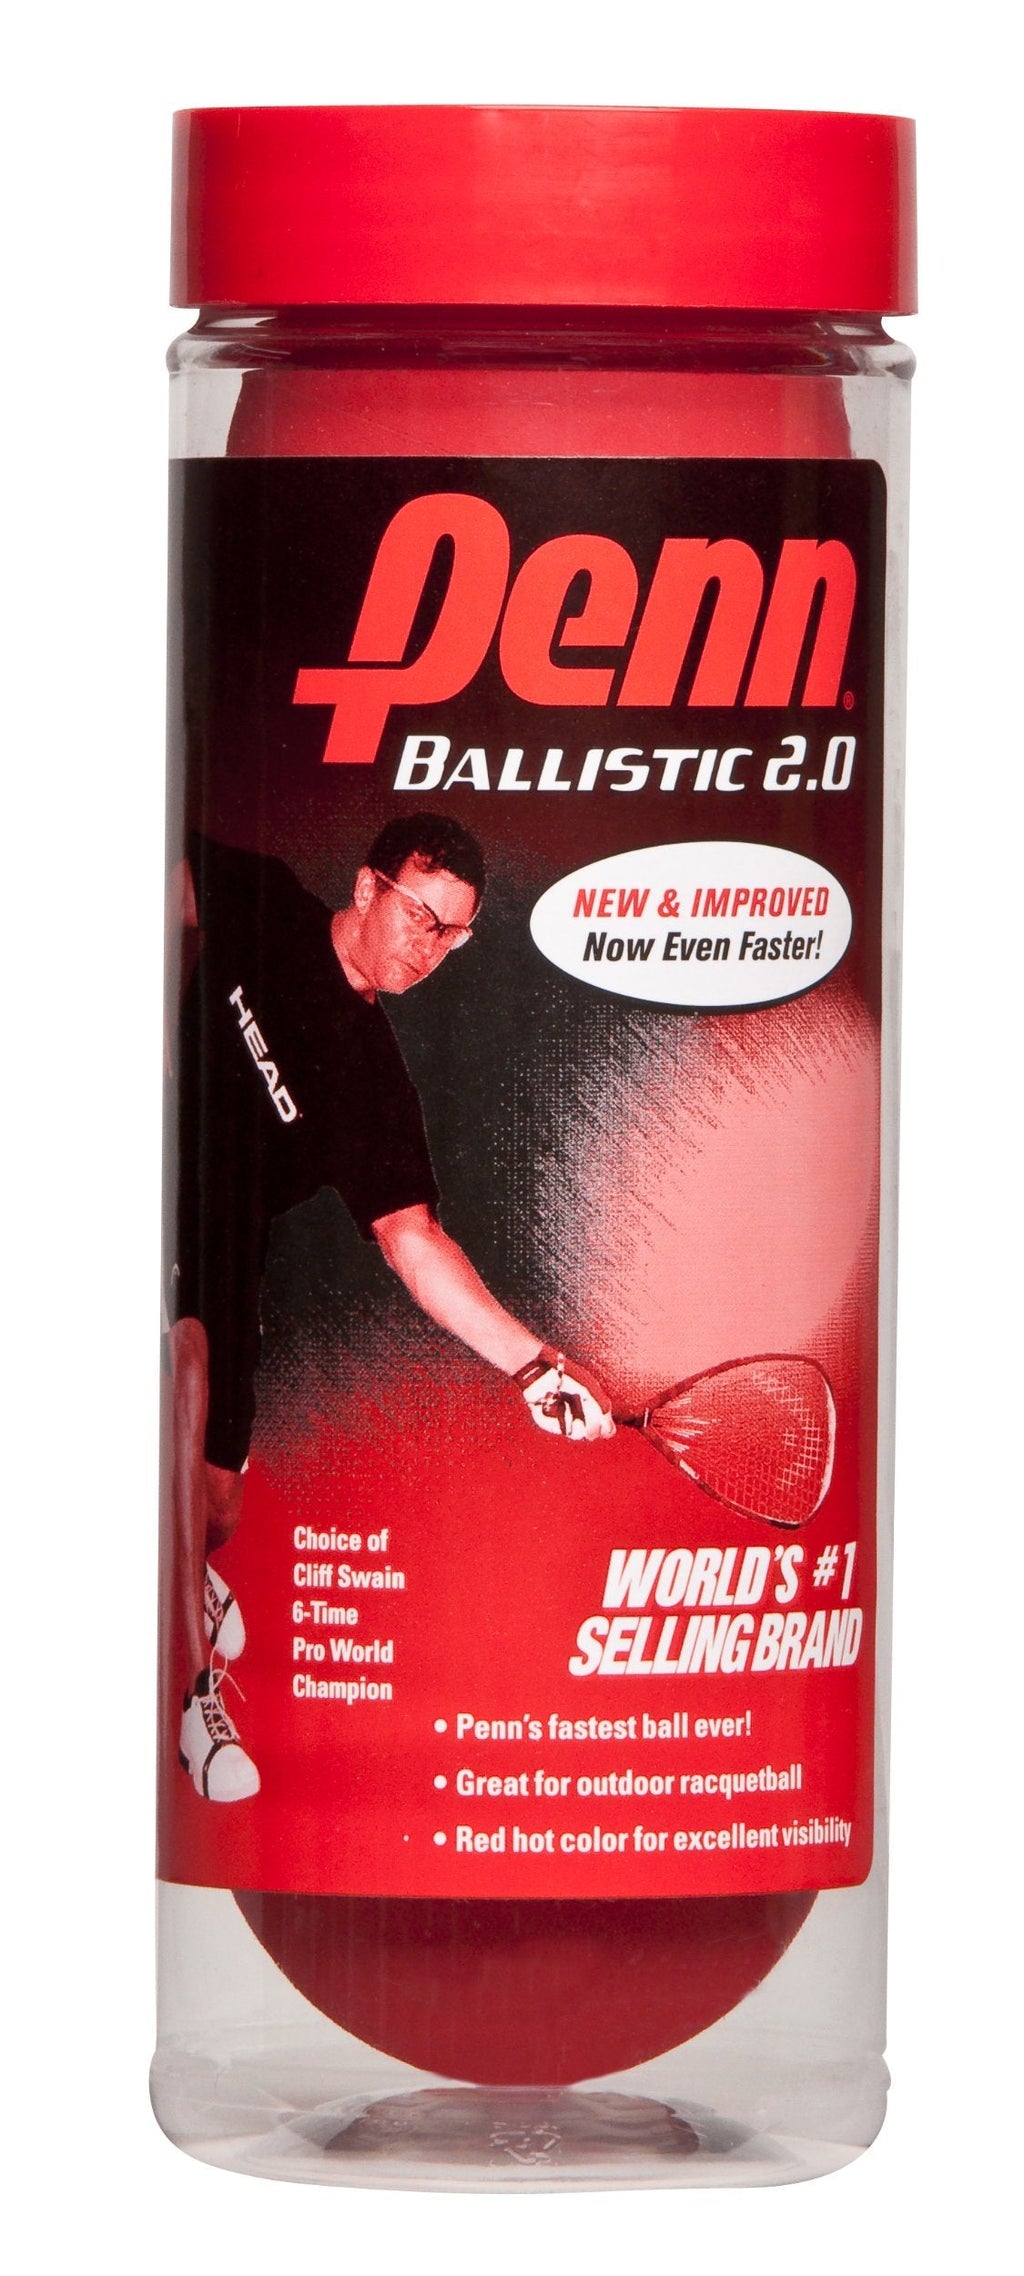 Penn Ballistic 2.0 Red Racquetballs - 1 Can of 3 Fast Racketball Balls - BeesActive Australia